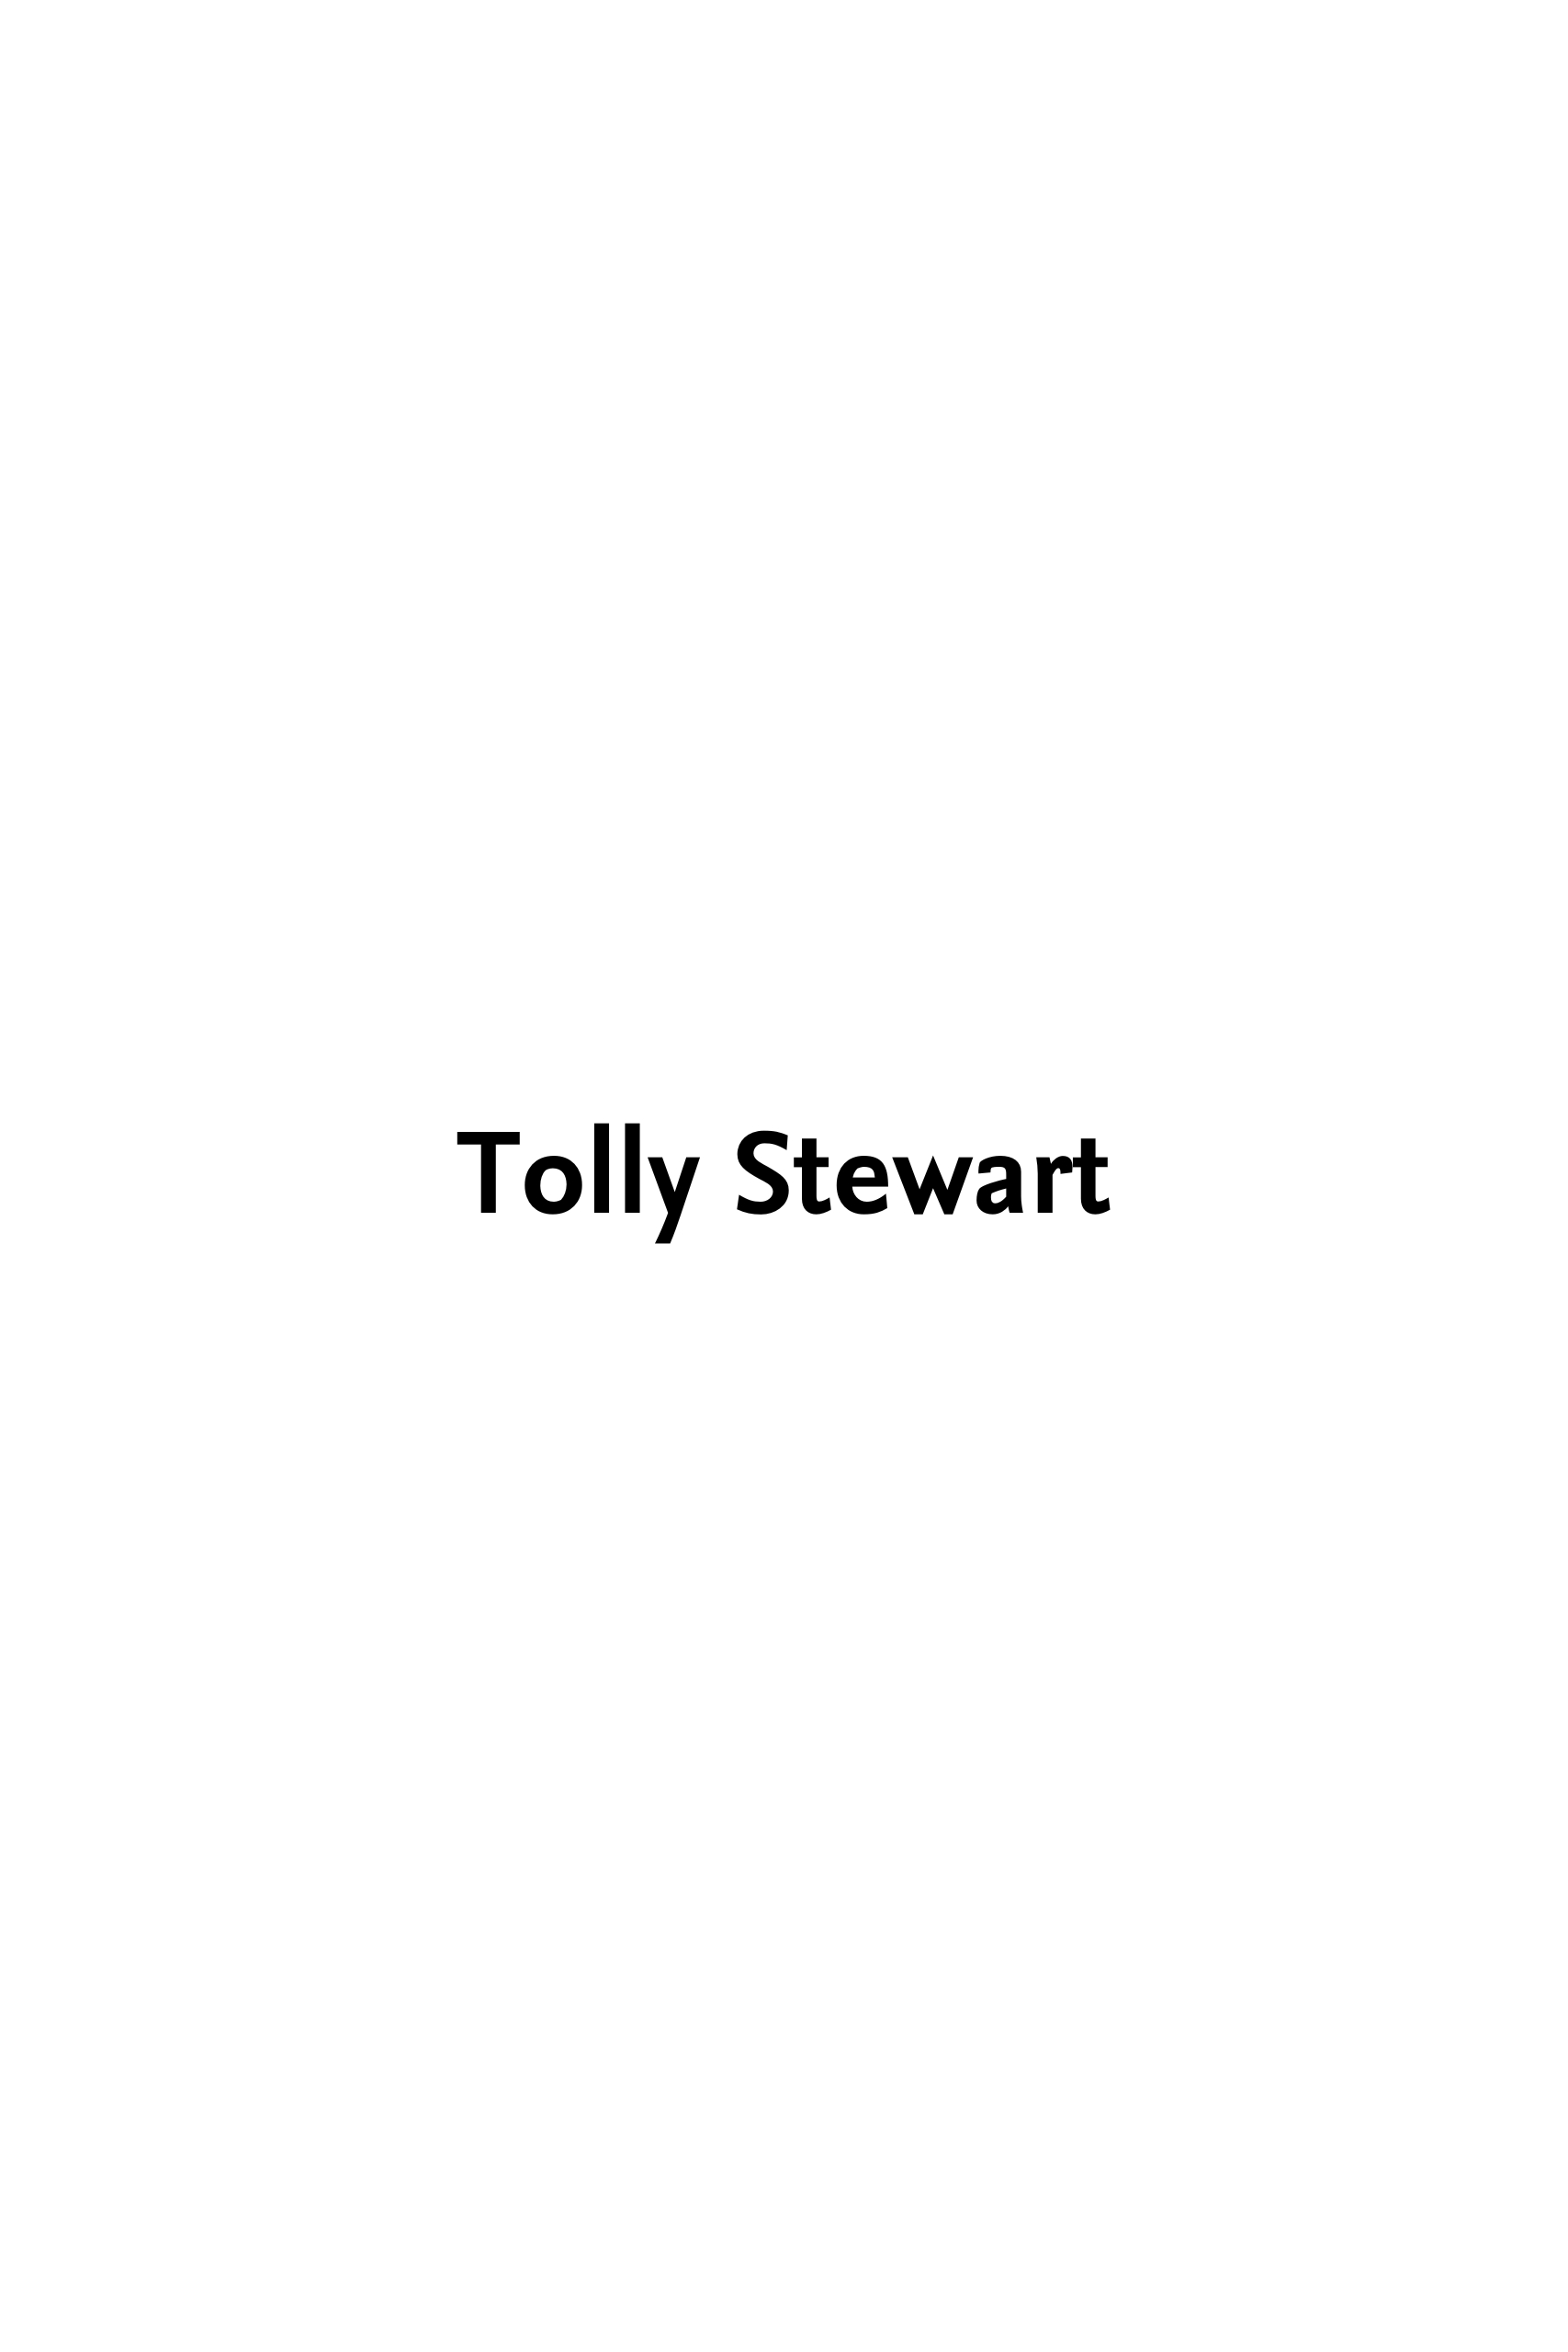 TOLLY STEWART